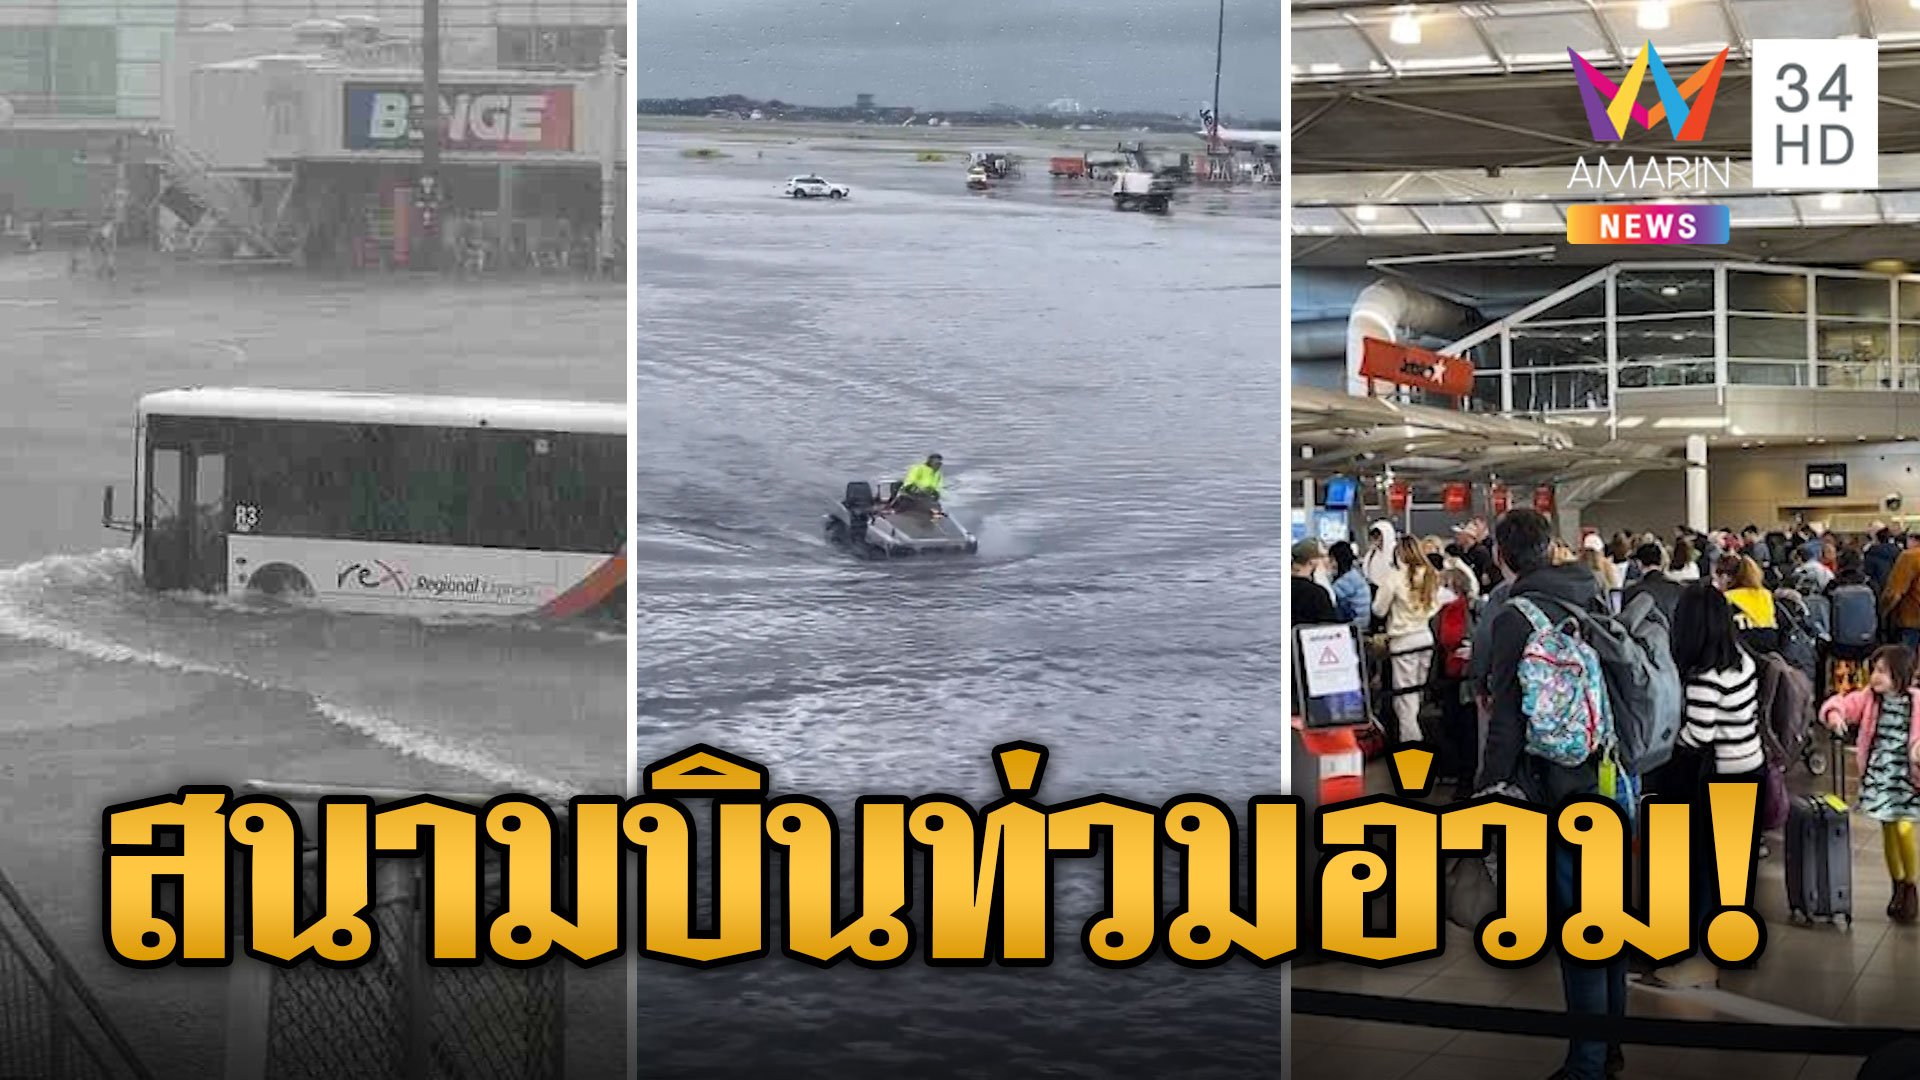 เมืองจิงโจ้ยกเลิกเที่ยวบินอื้อ น้ำท่วมสนามบินอ่วม | ข่าวอรุณอมรินทร์ | 26 ธ.ค. 66 | AMARIN TVHD34